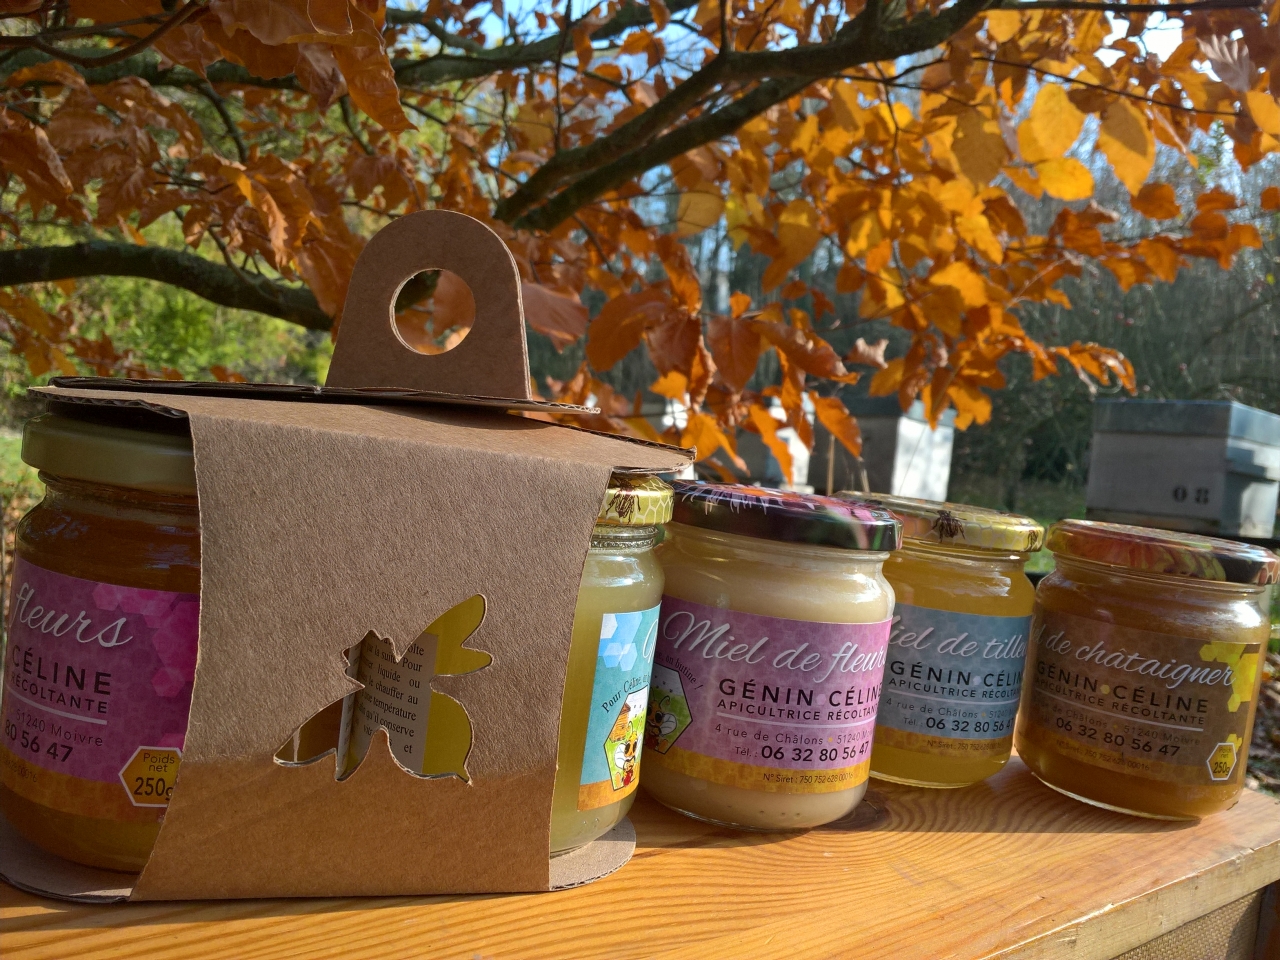 Lot de 3 kits de dégustation de miel de 250 g - Coffret cadeau - Naturel -  Miel à apprendre à connaître dans une boîte cadeau pratique en carton -  Contient des